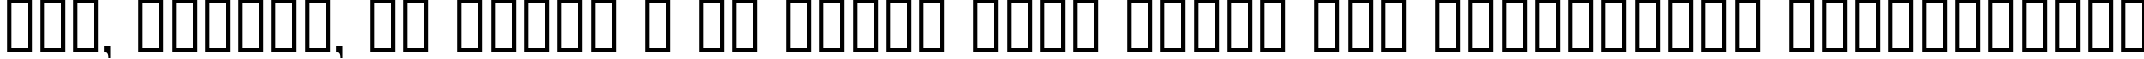 Пример написания шрифтом PanAm LogoText текста на украинском